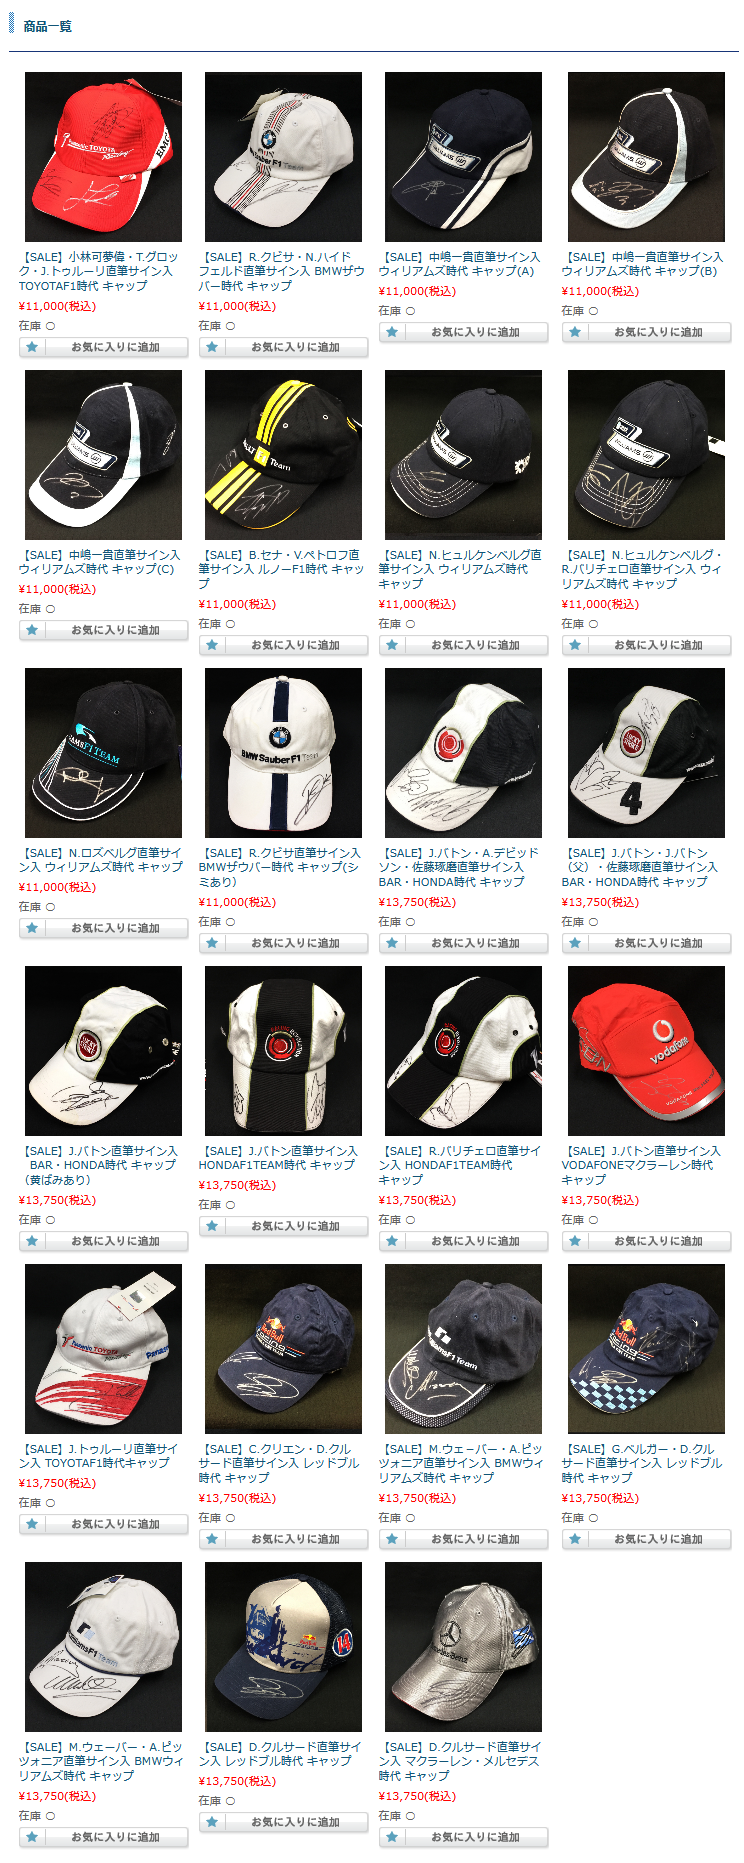 F1グッズショップ グランプリ 名古屋栄店 Blog Sale 直筆サイン入ドライバーズキャップ各種up致しました